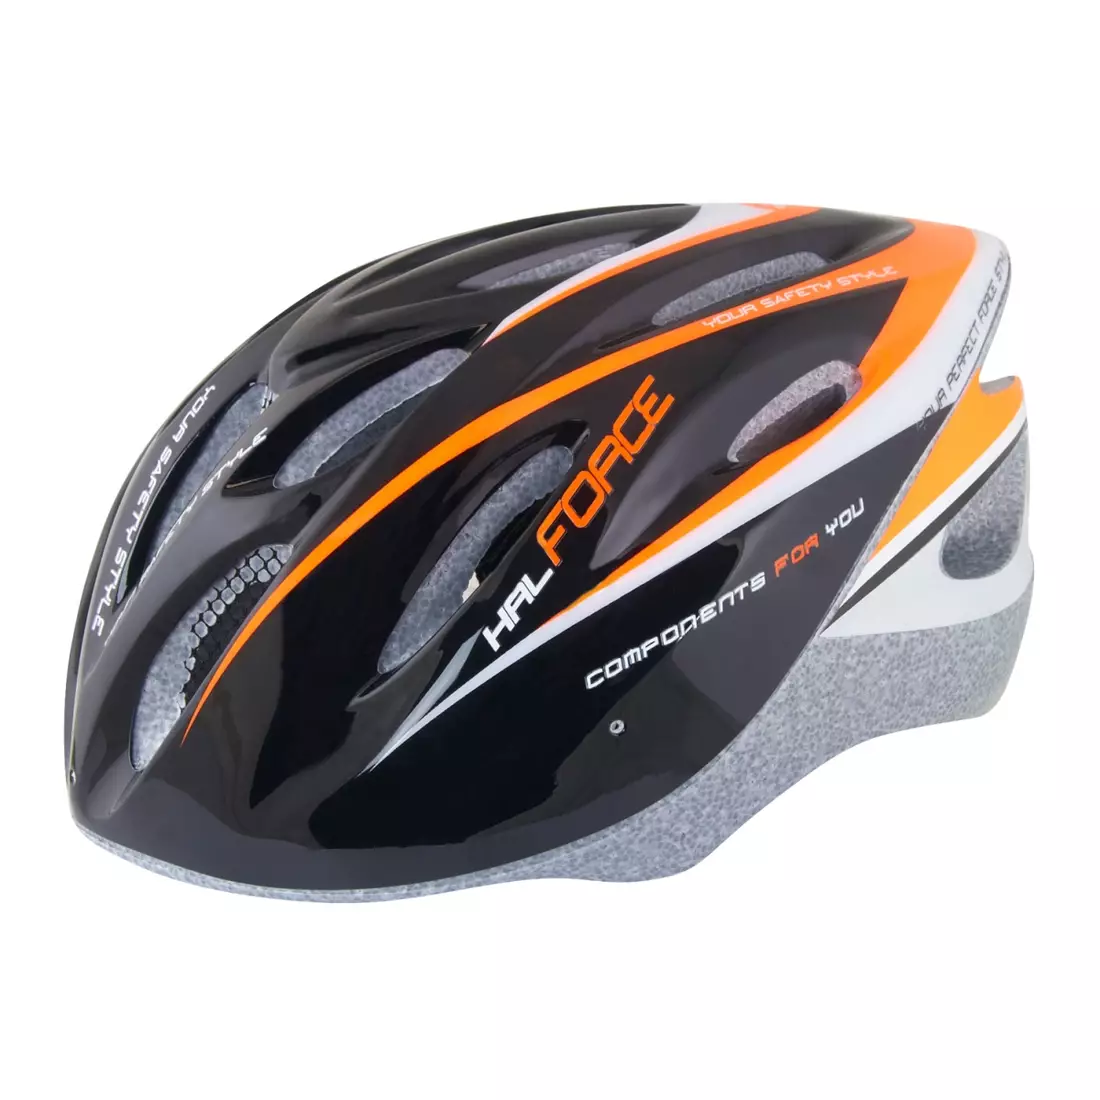 FORCE HAL bicycle helmet black-orange-white